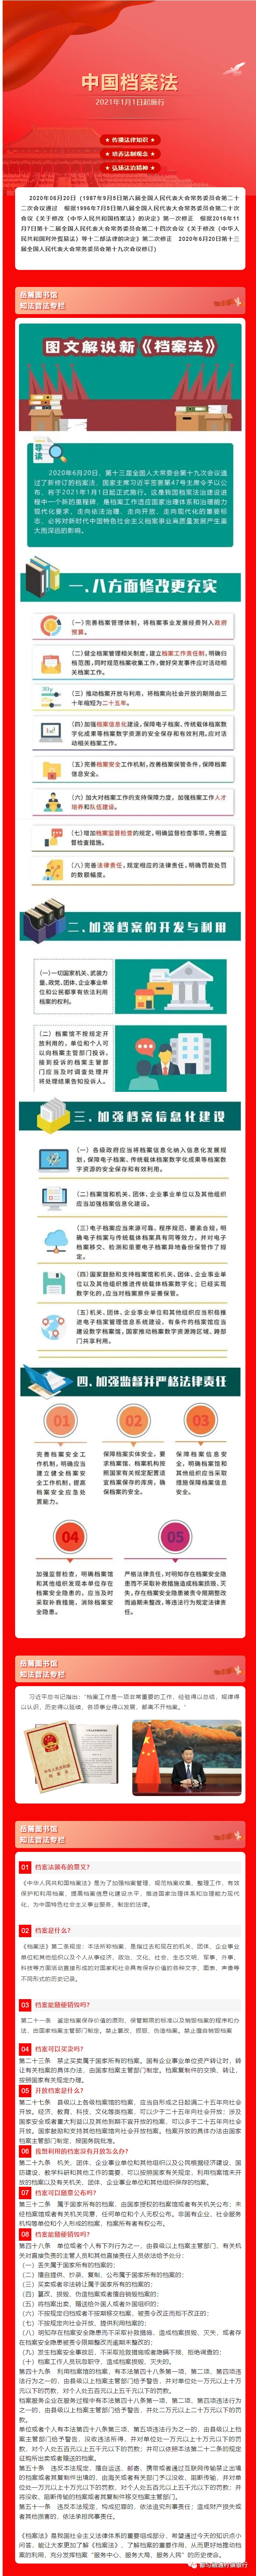 20230525-【普法课堂】中华人民共和国档案法.jpg